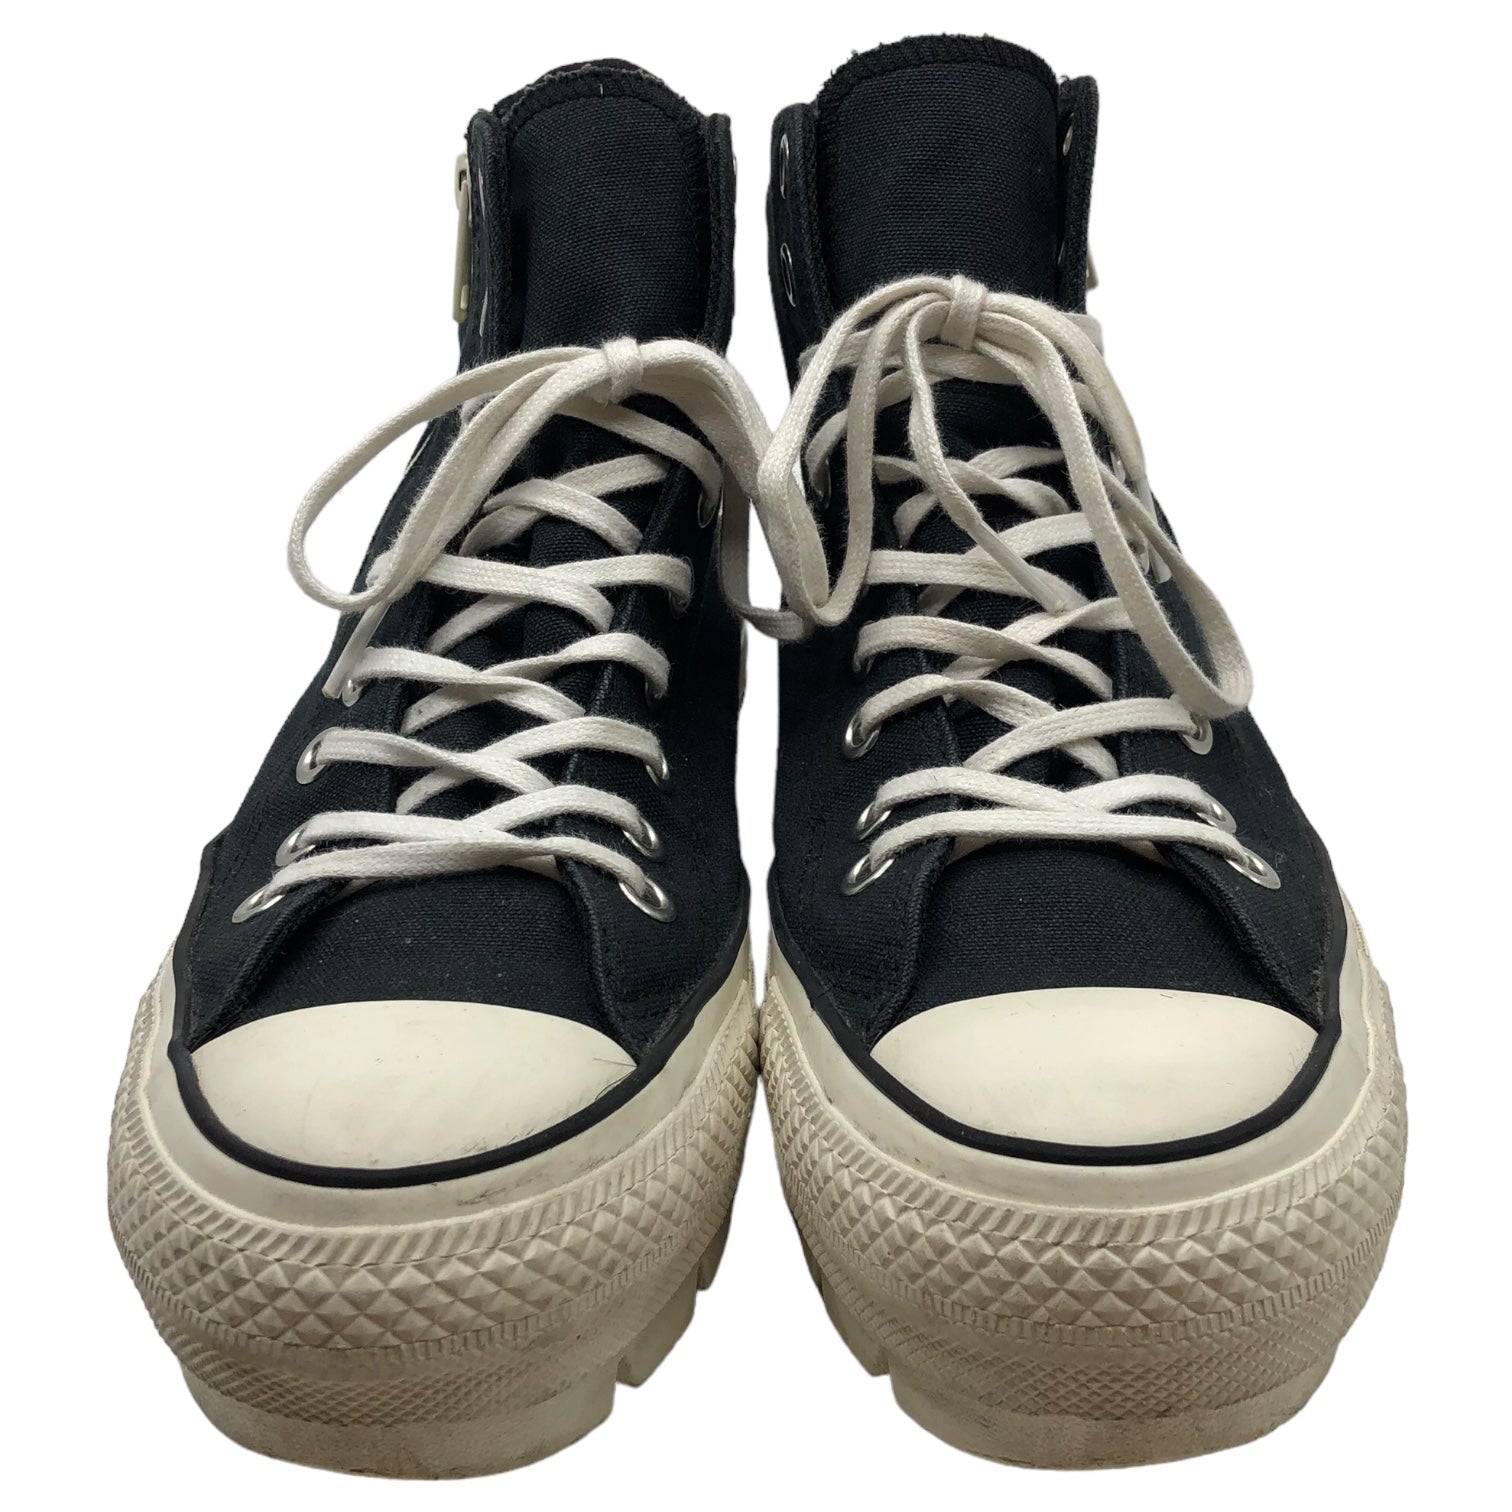 CONVERSE × beautiful people(コンバース×ビューティフルピープル) chunky heel sneakers チャンキーヒールスニーカー 31306220 26.0cm ブラック×ホワイト GORE-TEX ハイカット